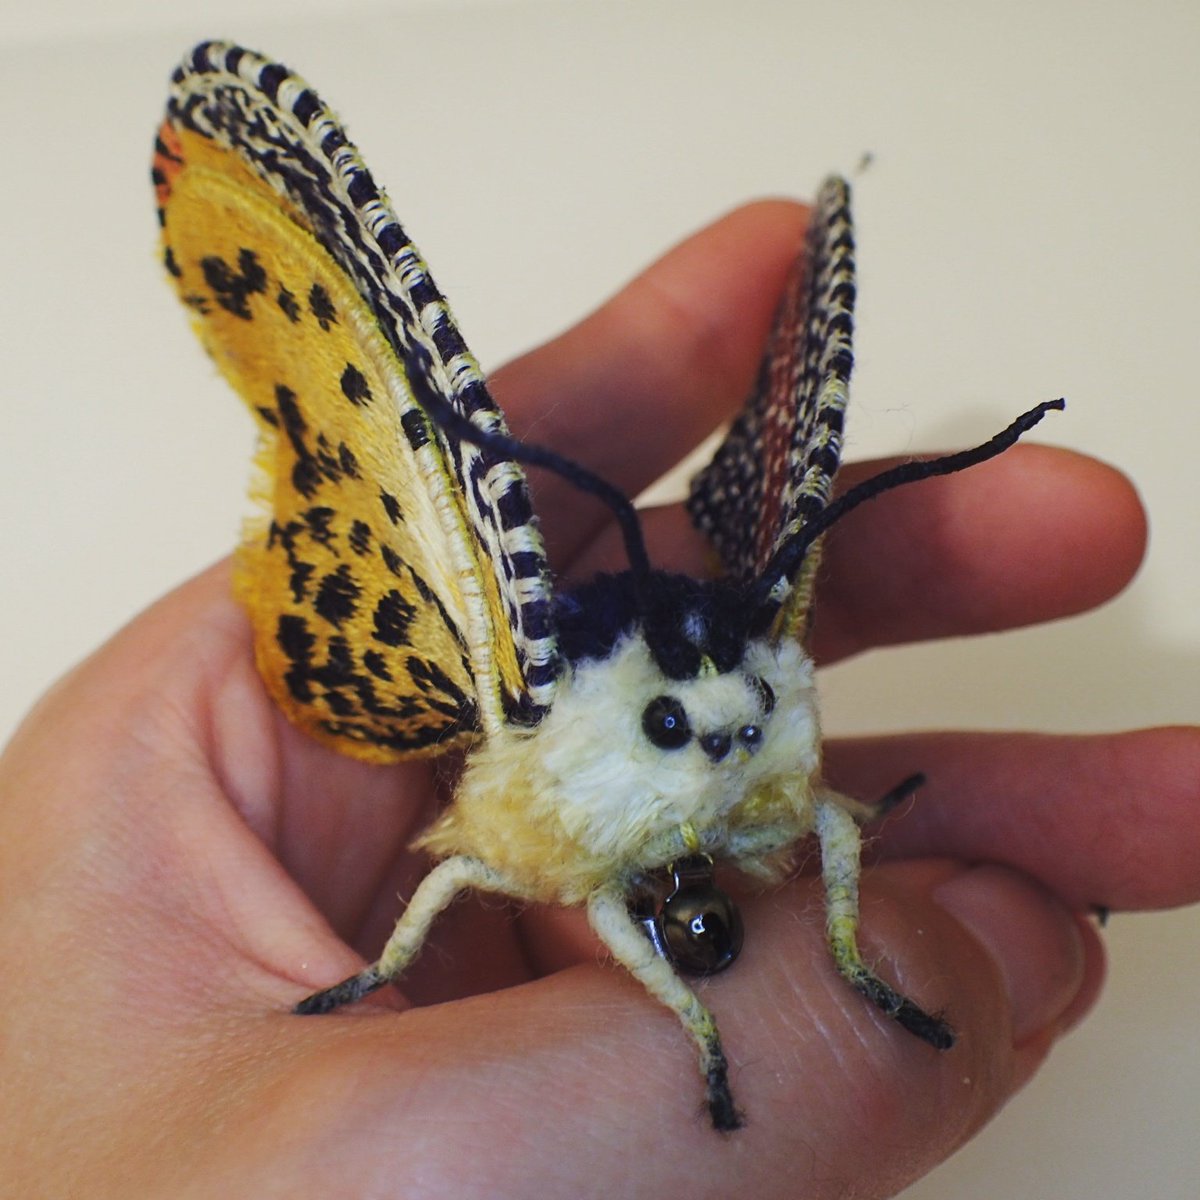 蛾売りおじさん on Twitter: "ビロードハマキの蛾ブローチ。刺し子刺繍のような上翅の模様がとてもお洒落です(*^^*) #蛾ブローチ